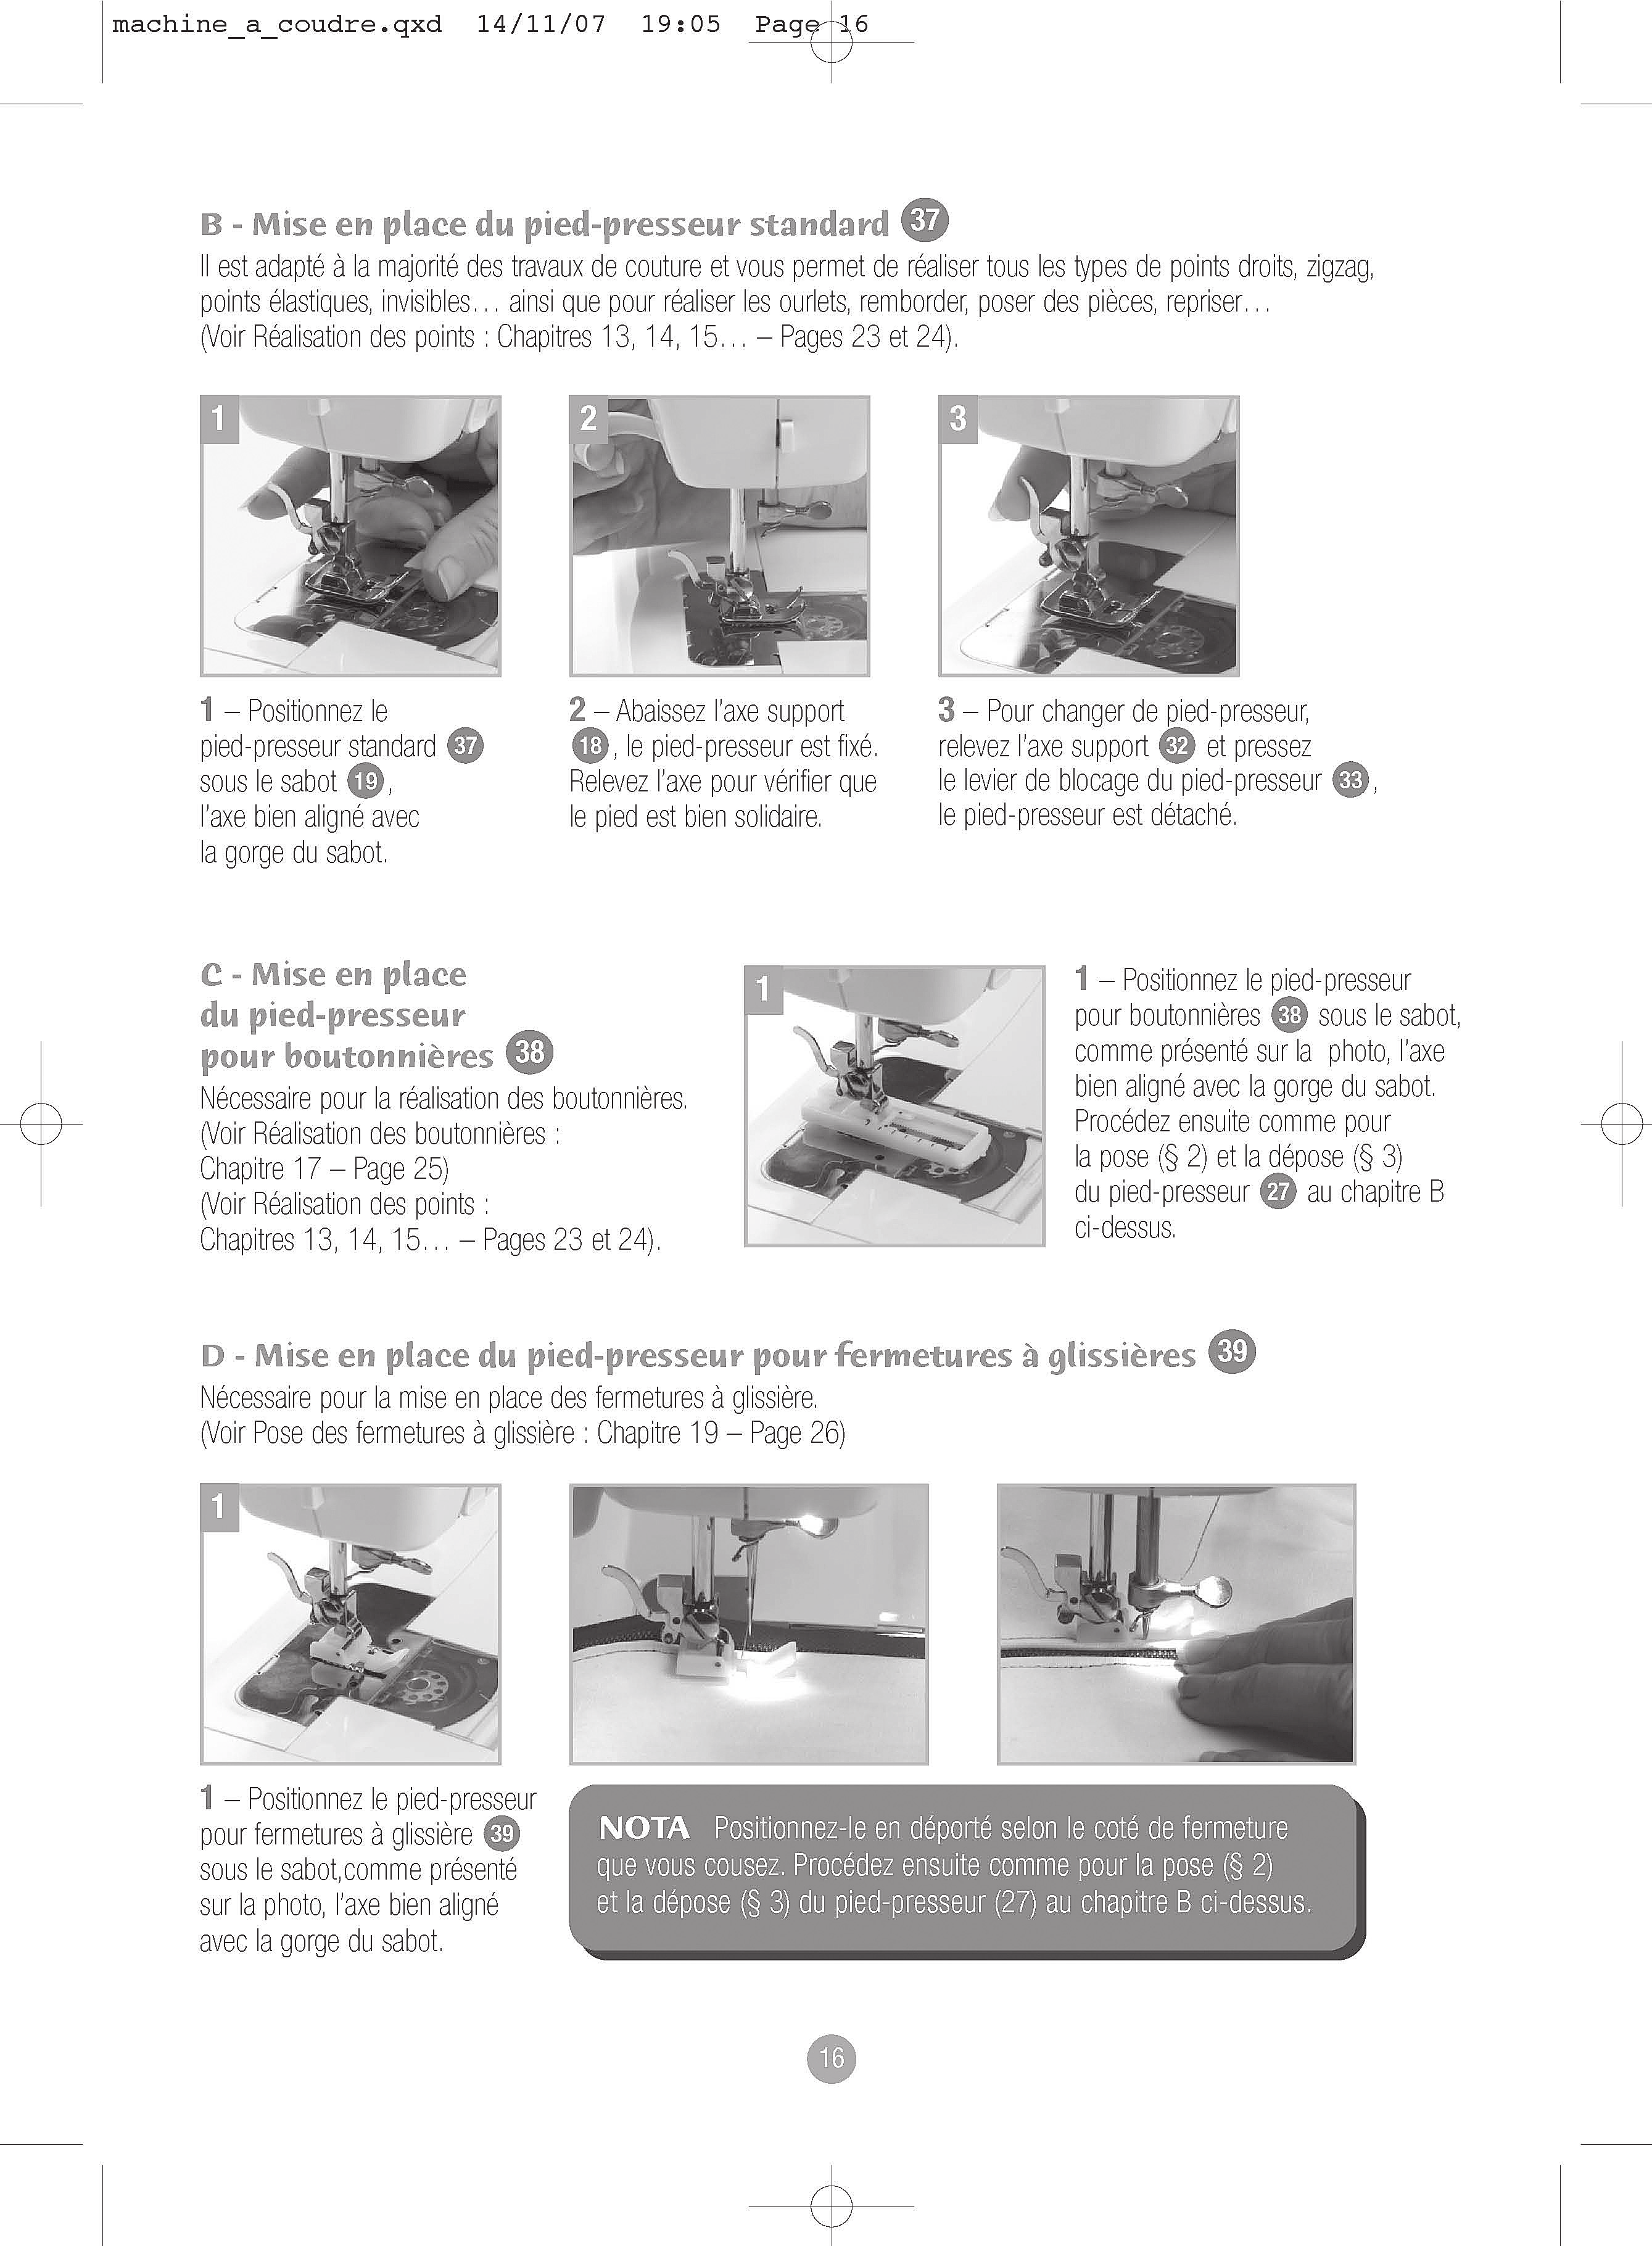 4 - Installer le pied presseur (21) Votre machine à coudre dispose de 3 types de pied presseurs adaptés aux différents travaux de couture que vous pouvez être amené à réaliser, comme les travaux